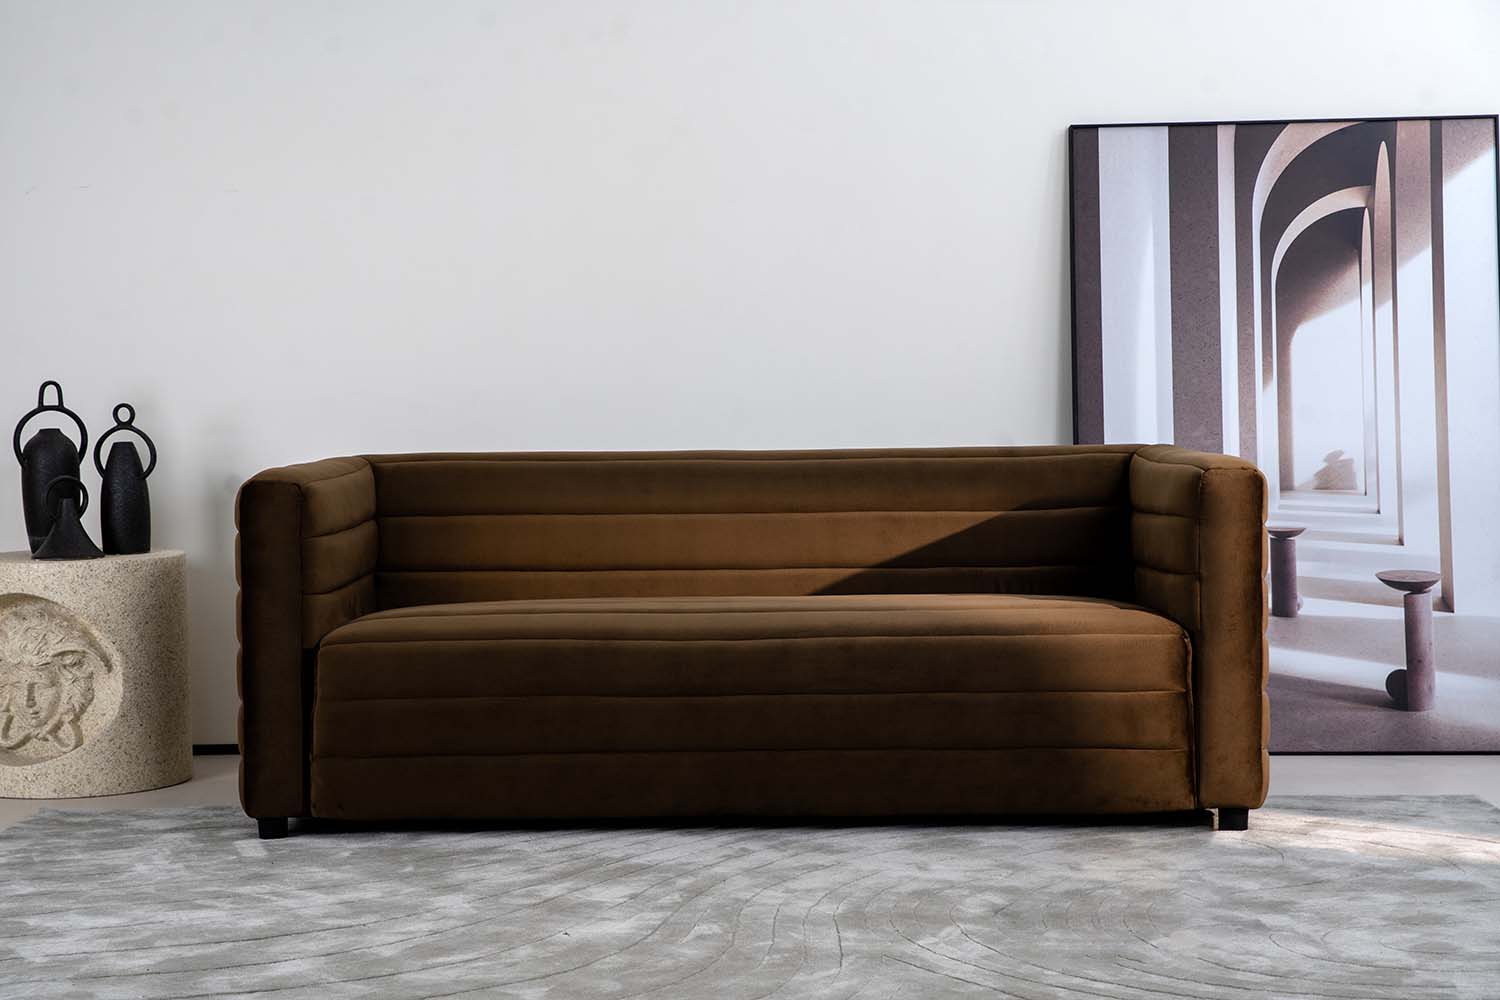 China Furniture: Spotlight on MIGLIO's Velvet Upholstered Sofa